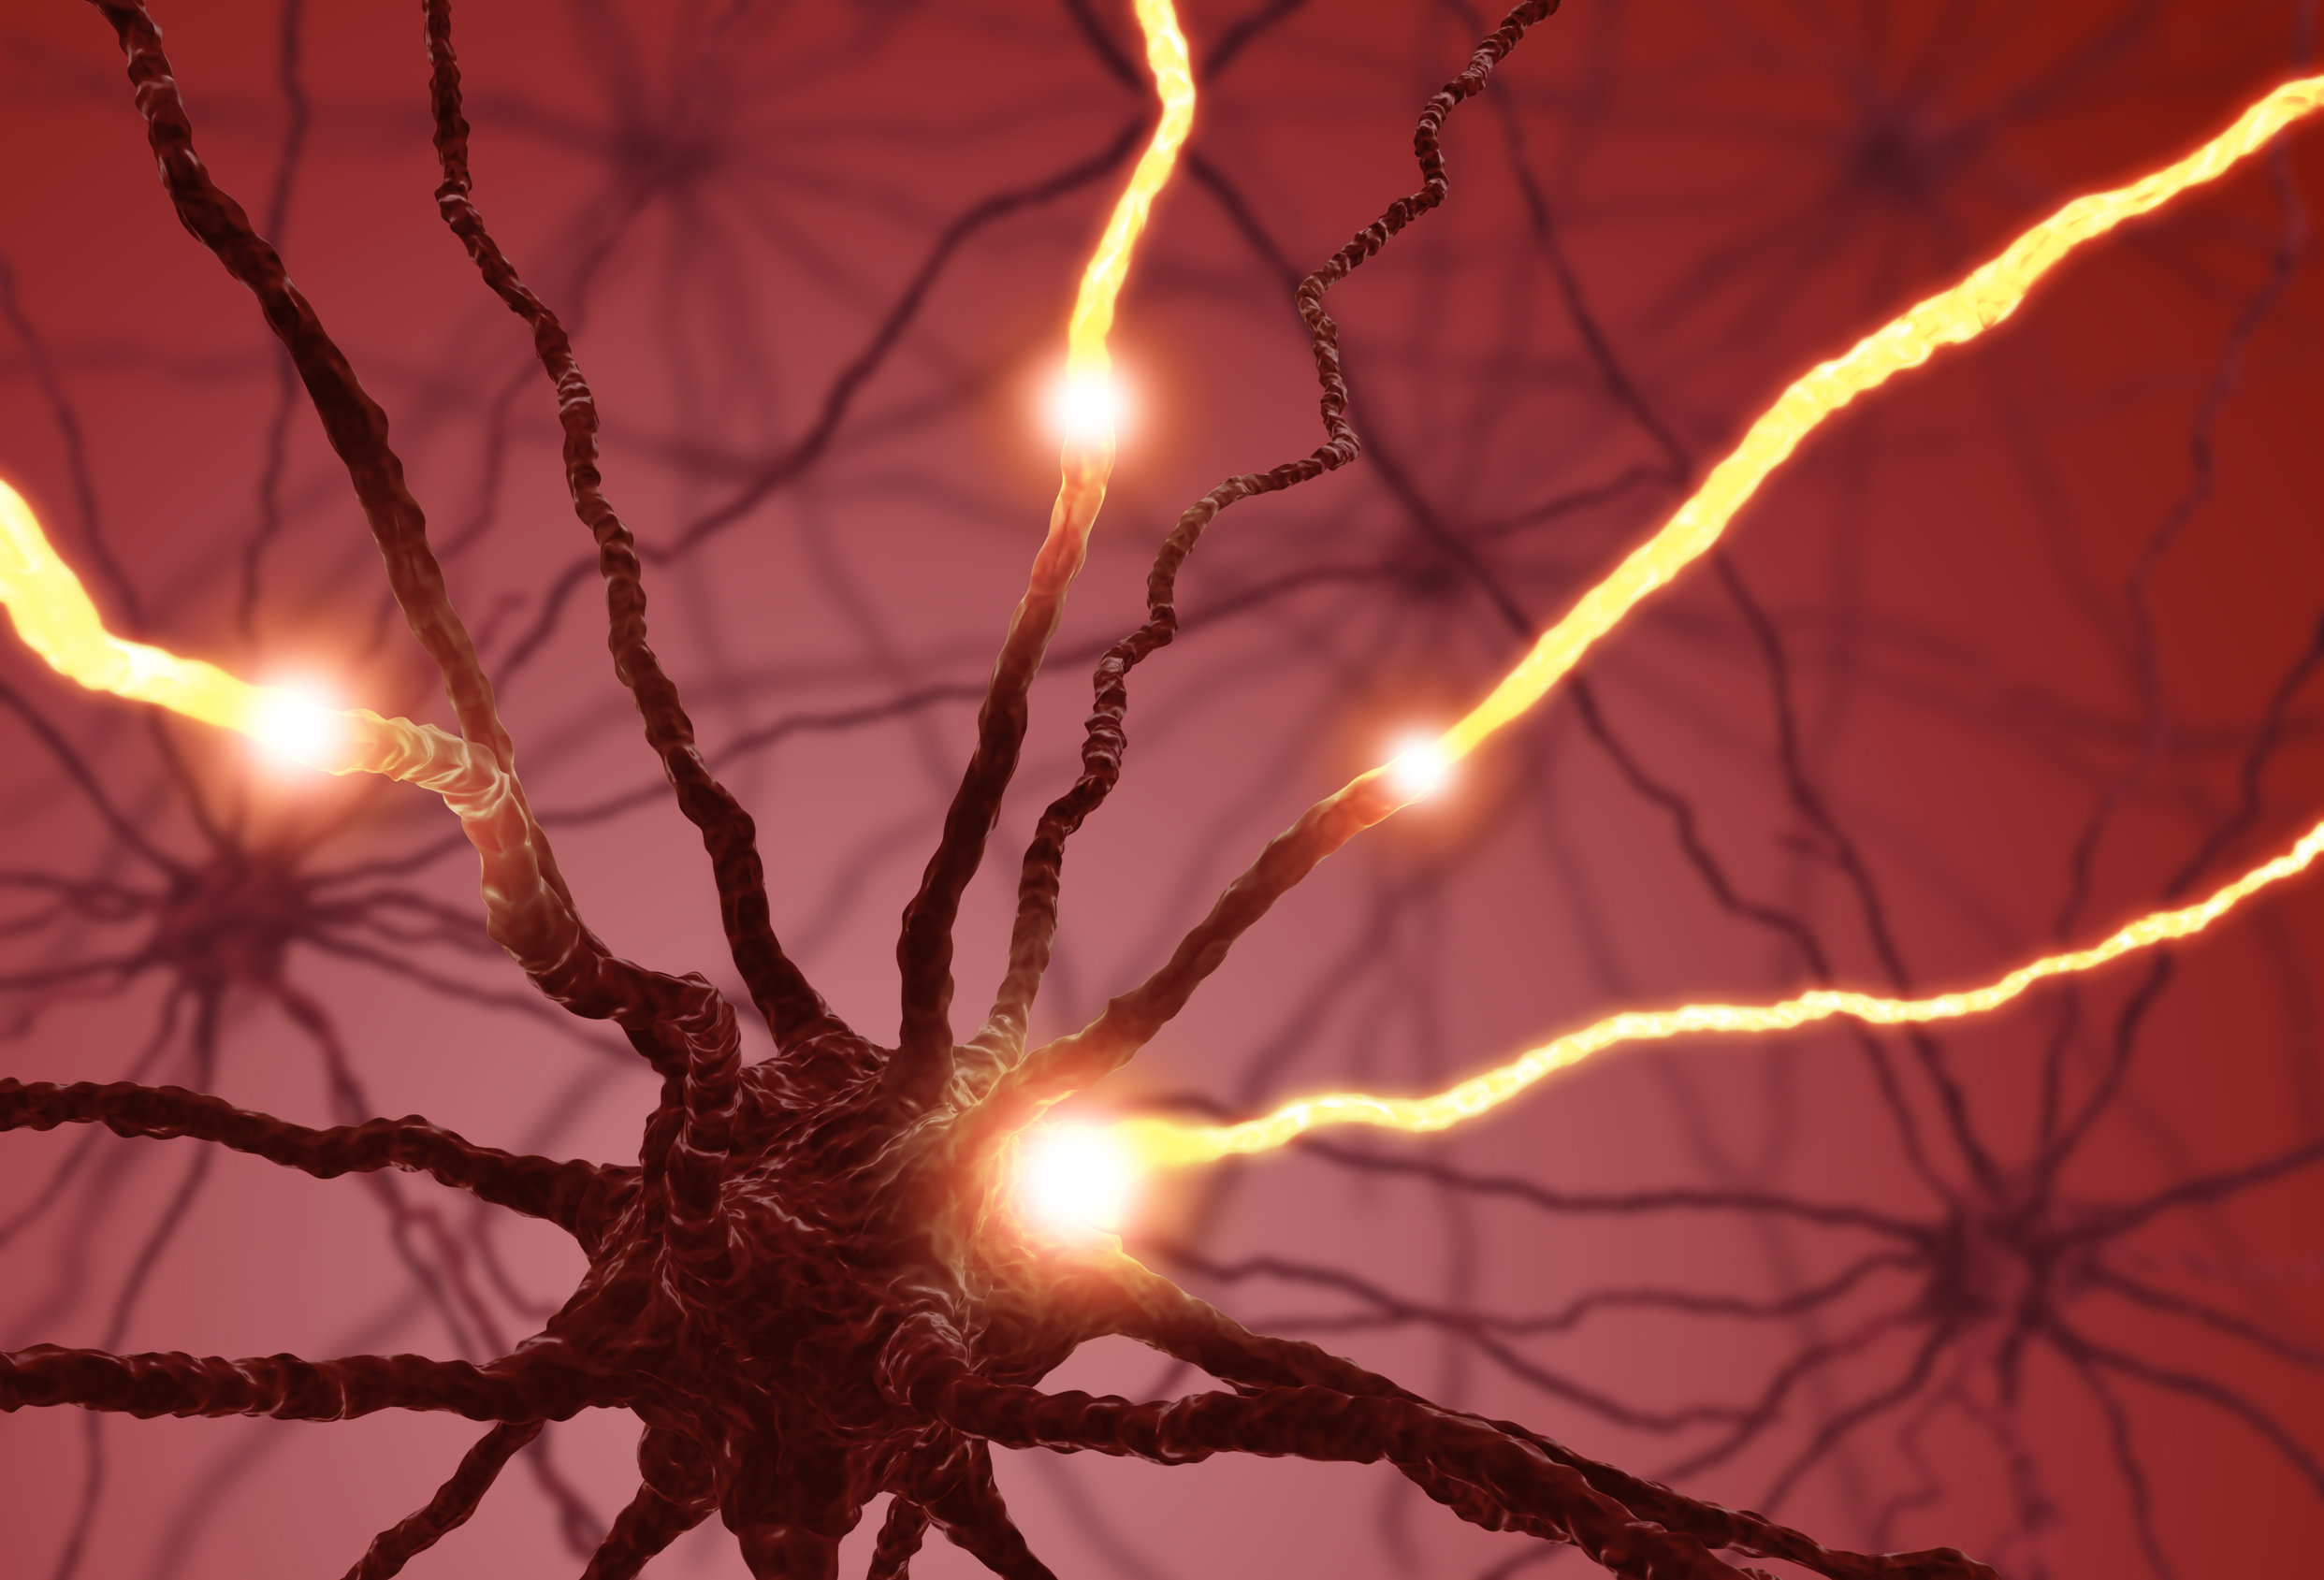 Jak neurony odnajdują swoje miejsce w mózgu? Odpowiedź ukryta w nicieniu